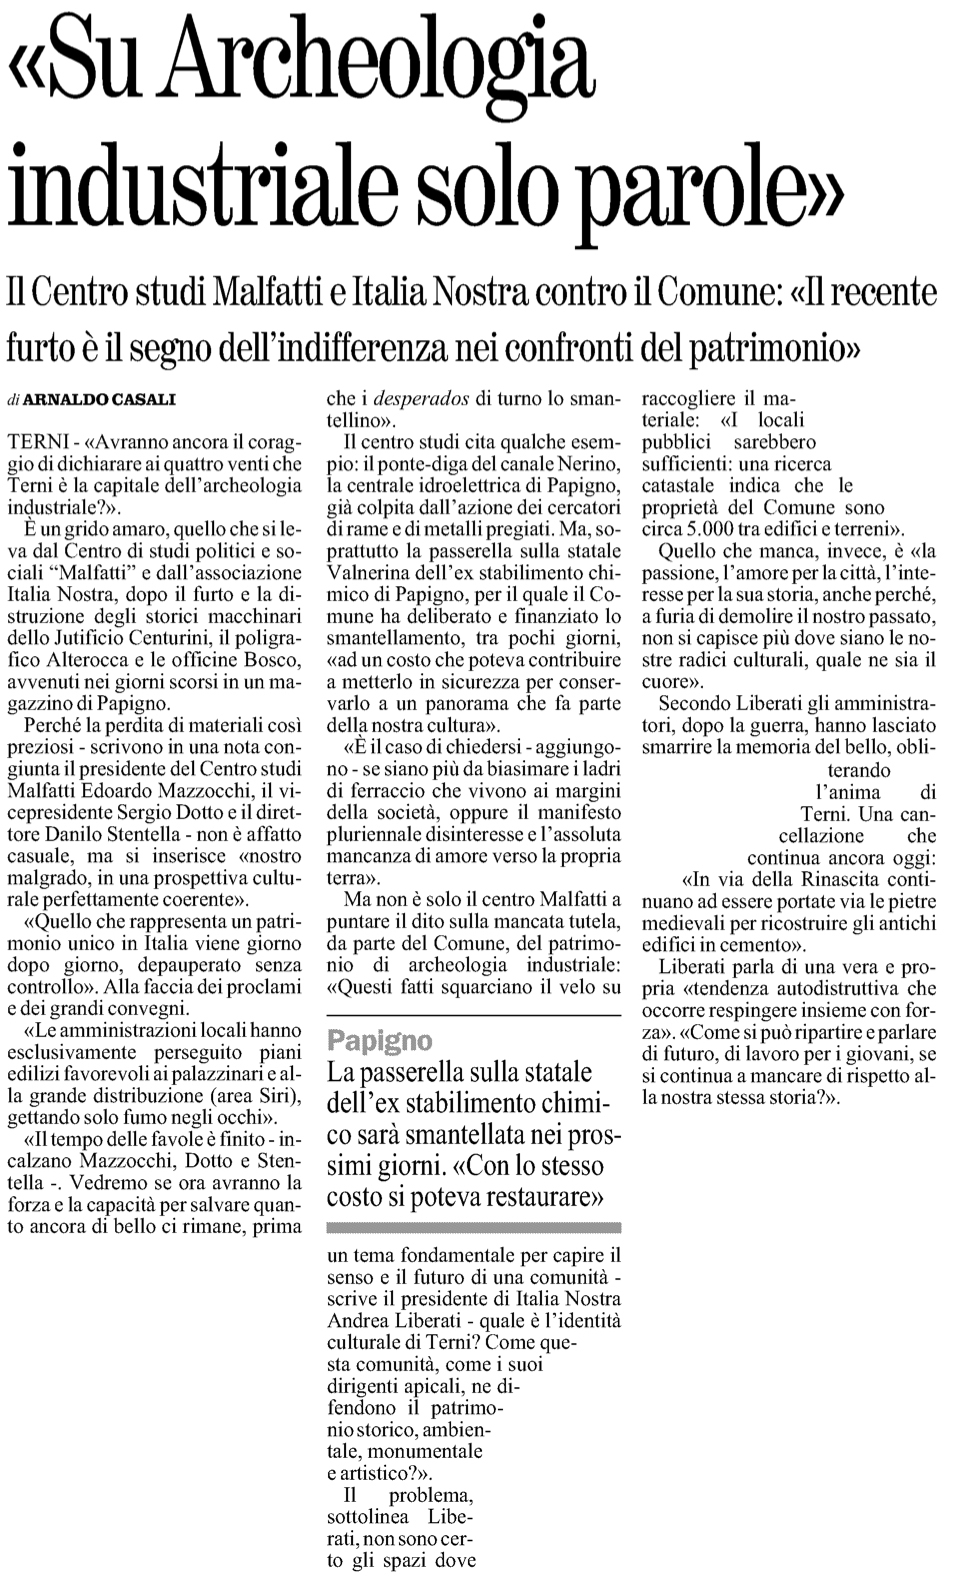 Il Giornale dell'Umbria 07-07-2012 p25